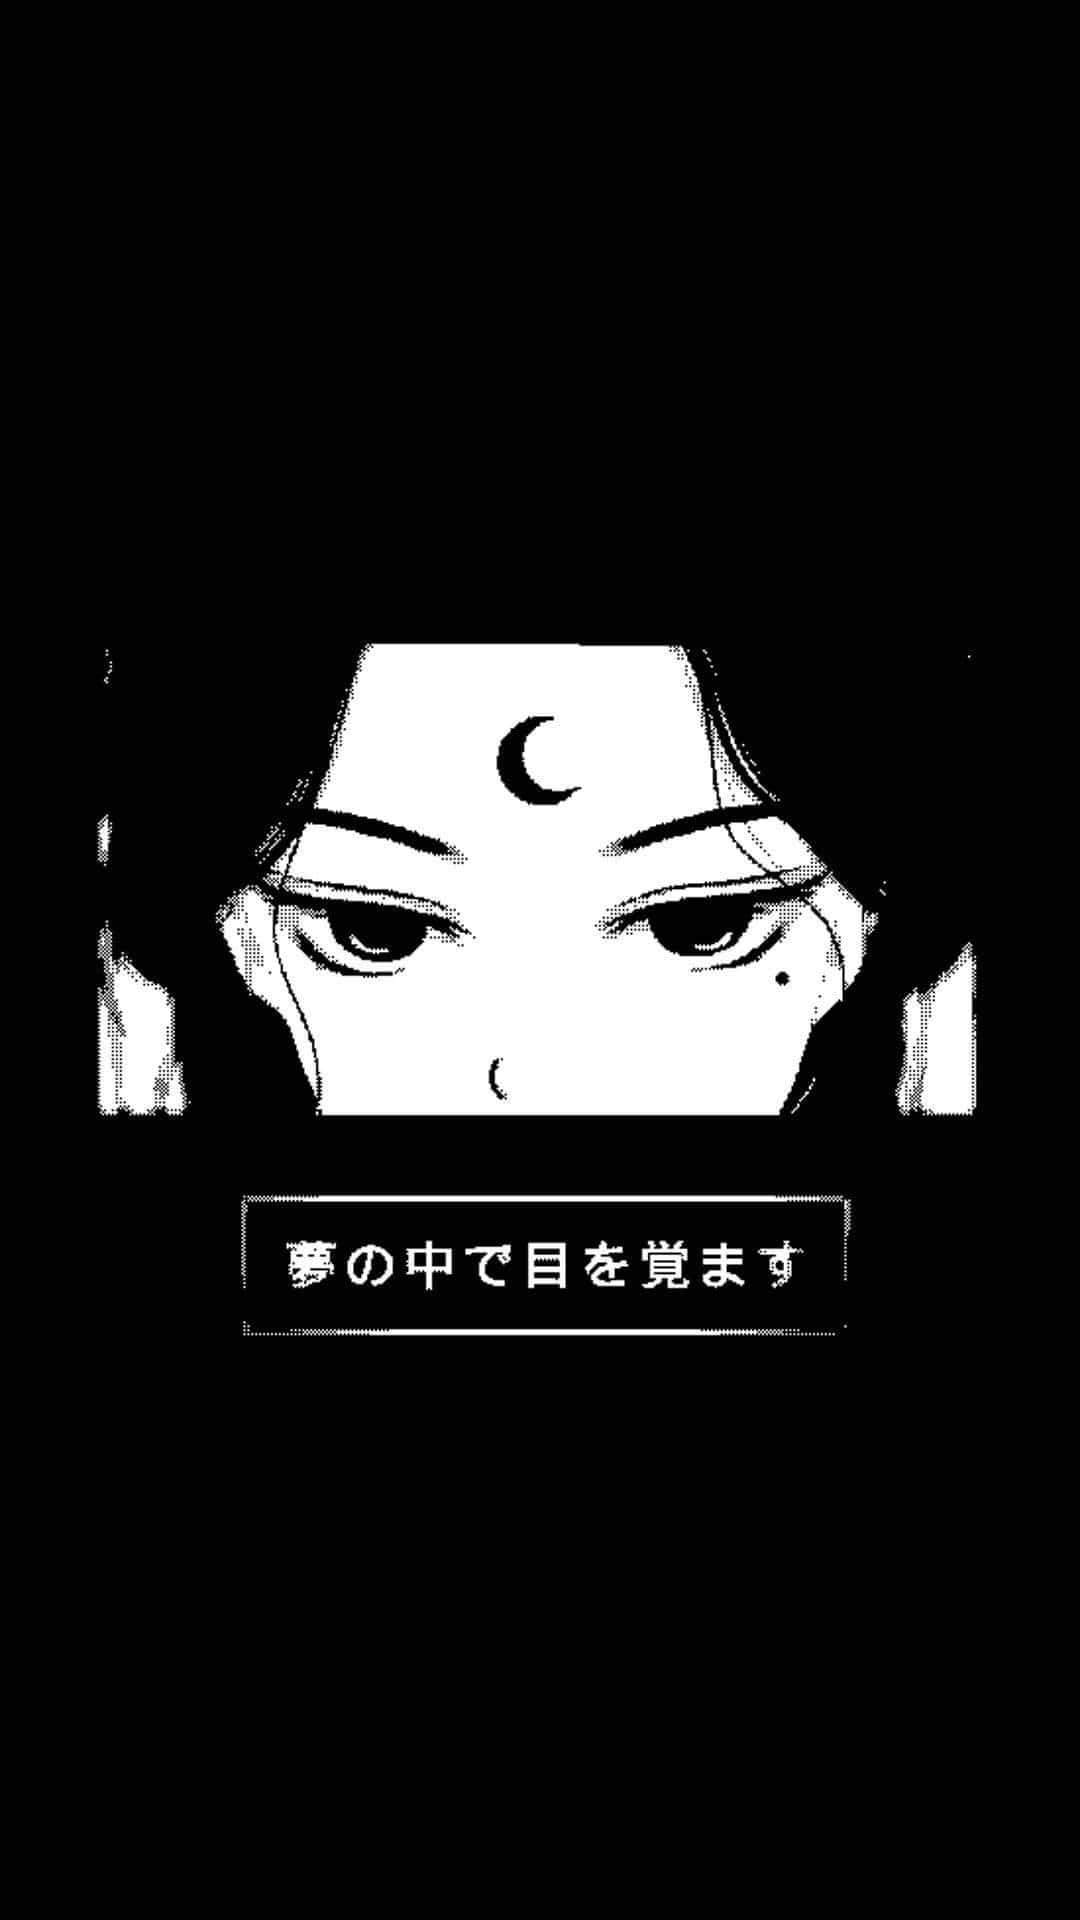 Chicade Anime Estética Oscura Con Frente Creciente. Fondo de pantalla